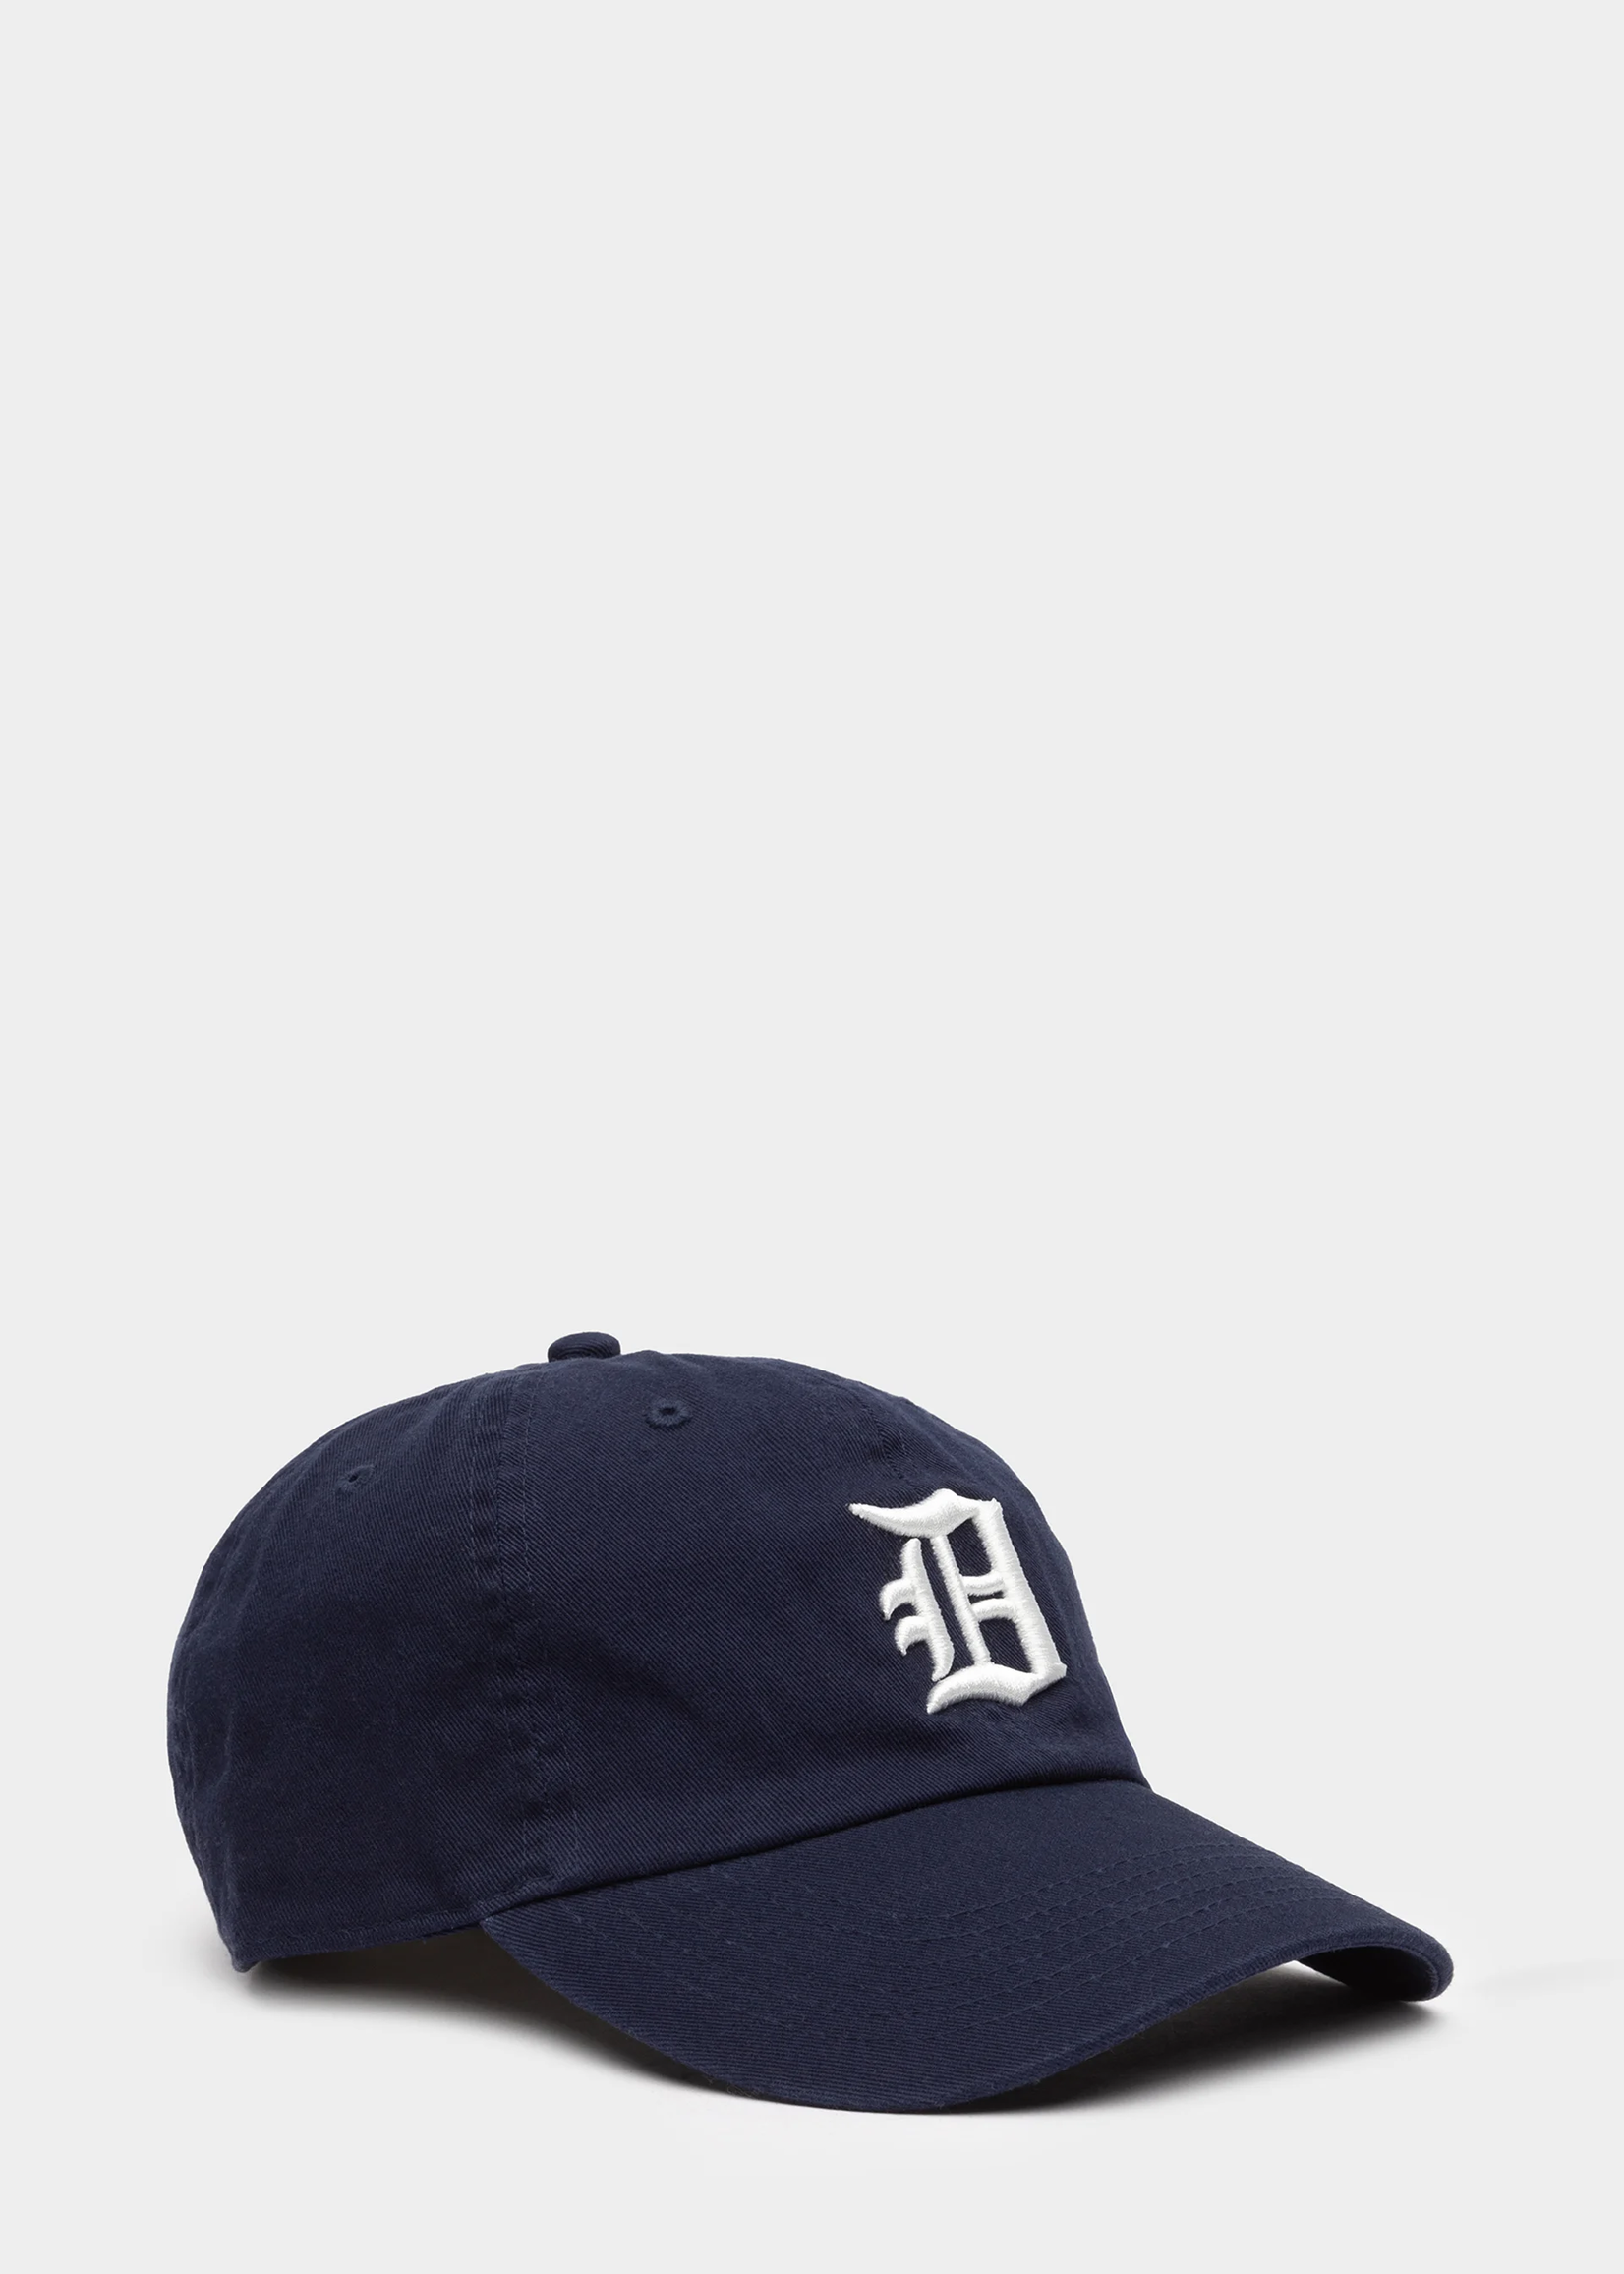 Denimist Baseball hat- Blue/white